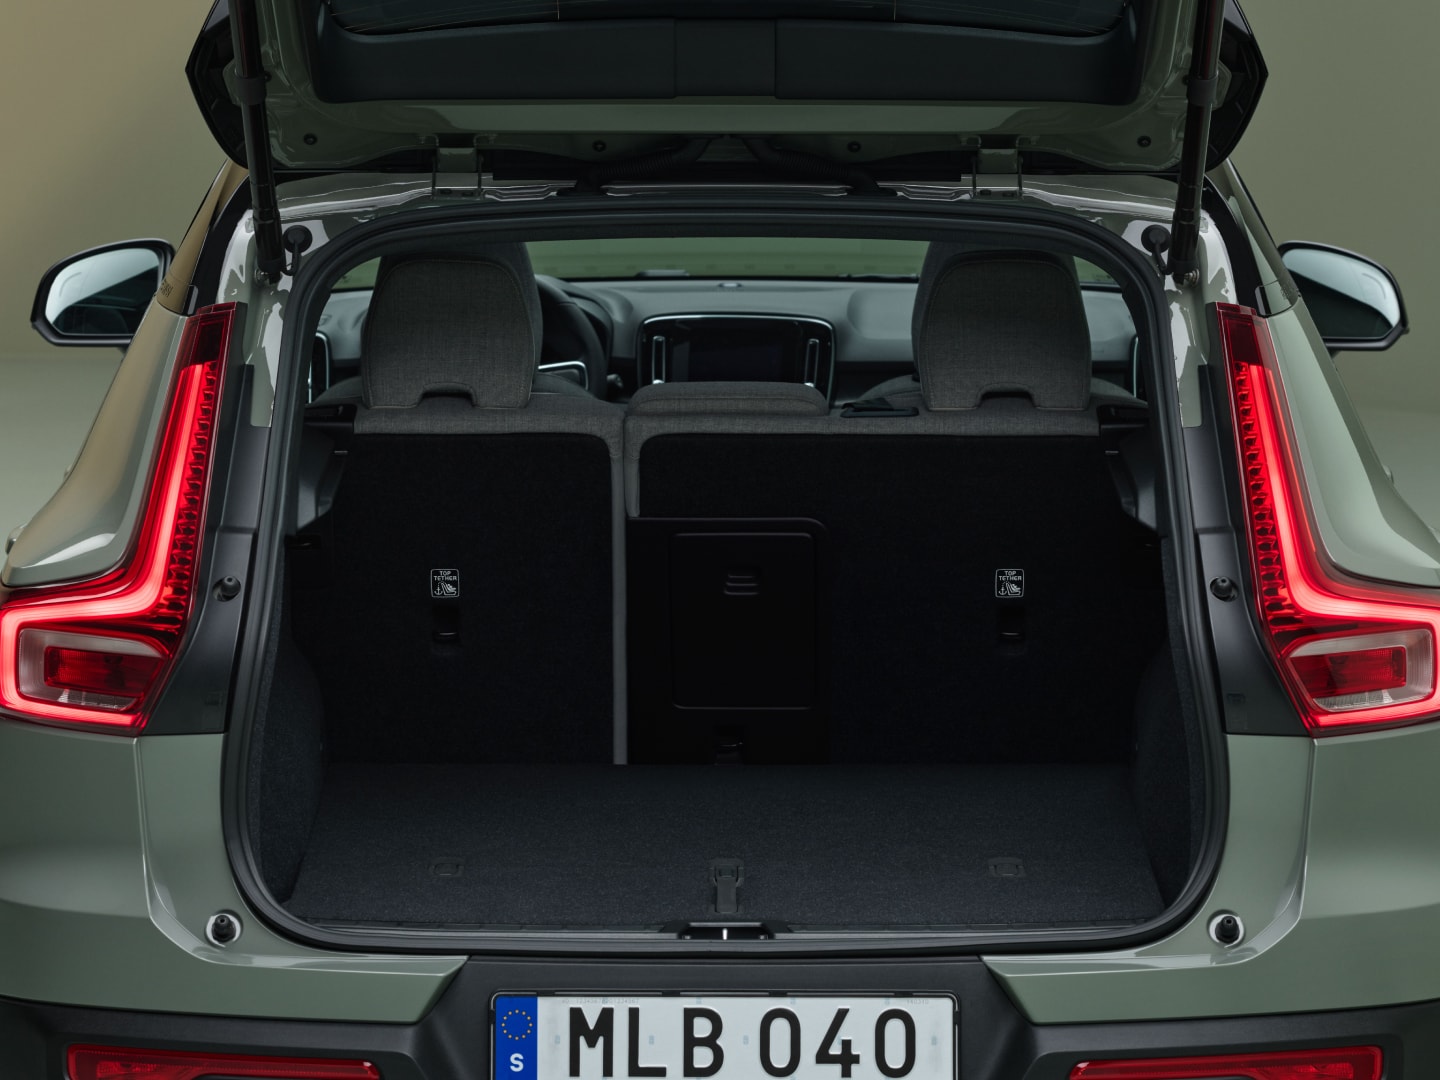 Hayonul deschis al modelului Volvo EX40 dezvăluie un portbagaj spațios și lat.